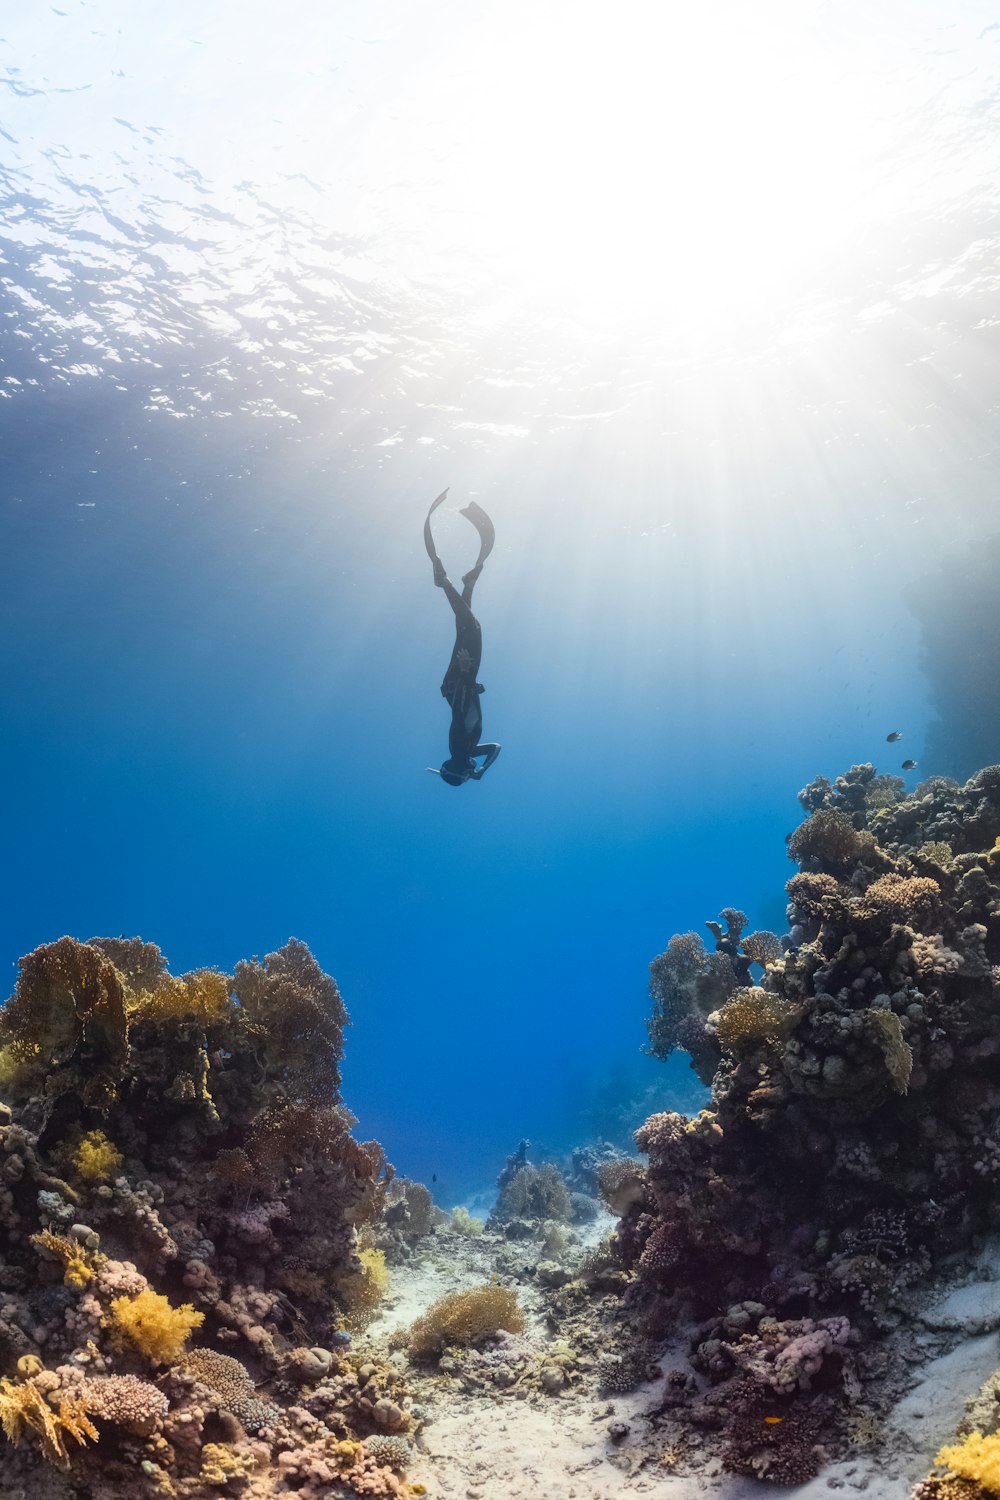 Una persona está nadando en el agua cerca de un arrecife de coral